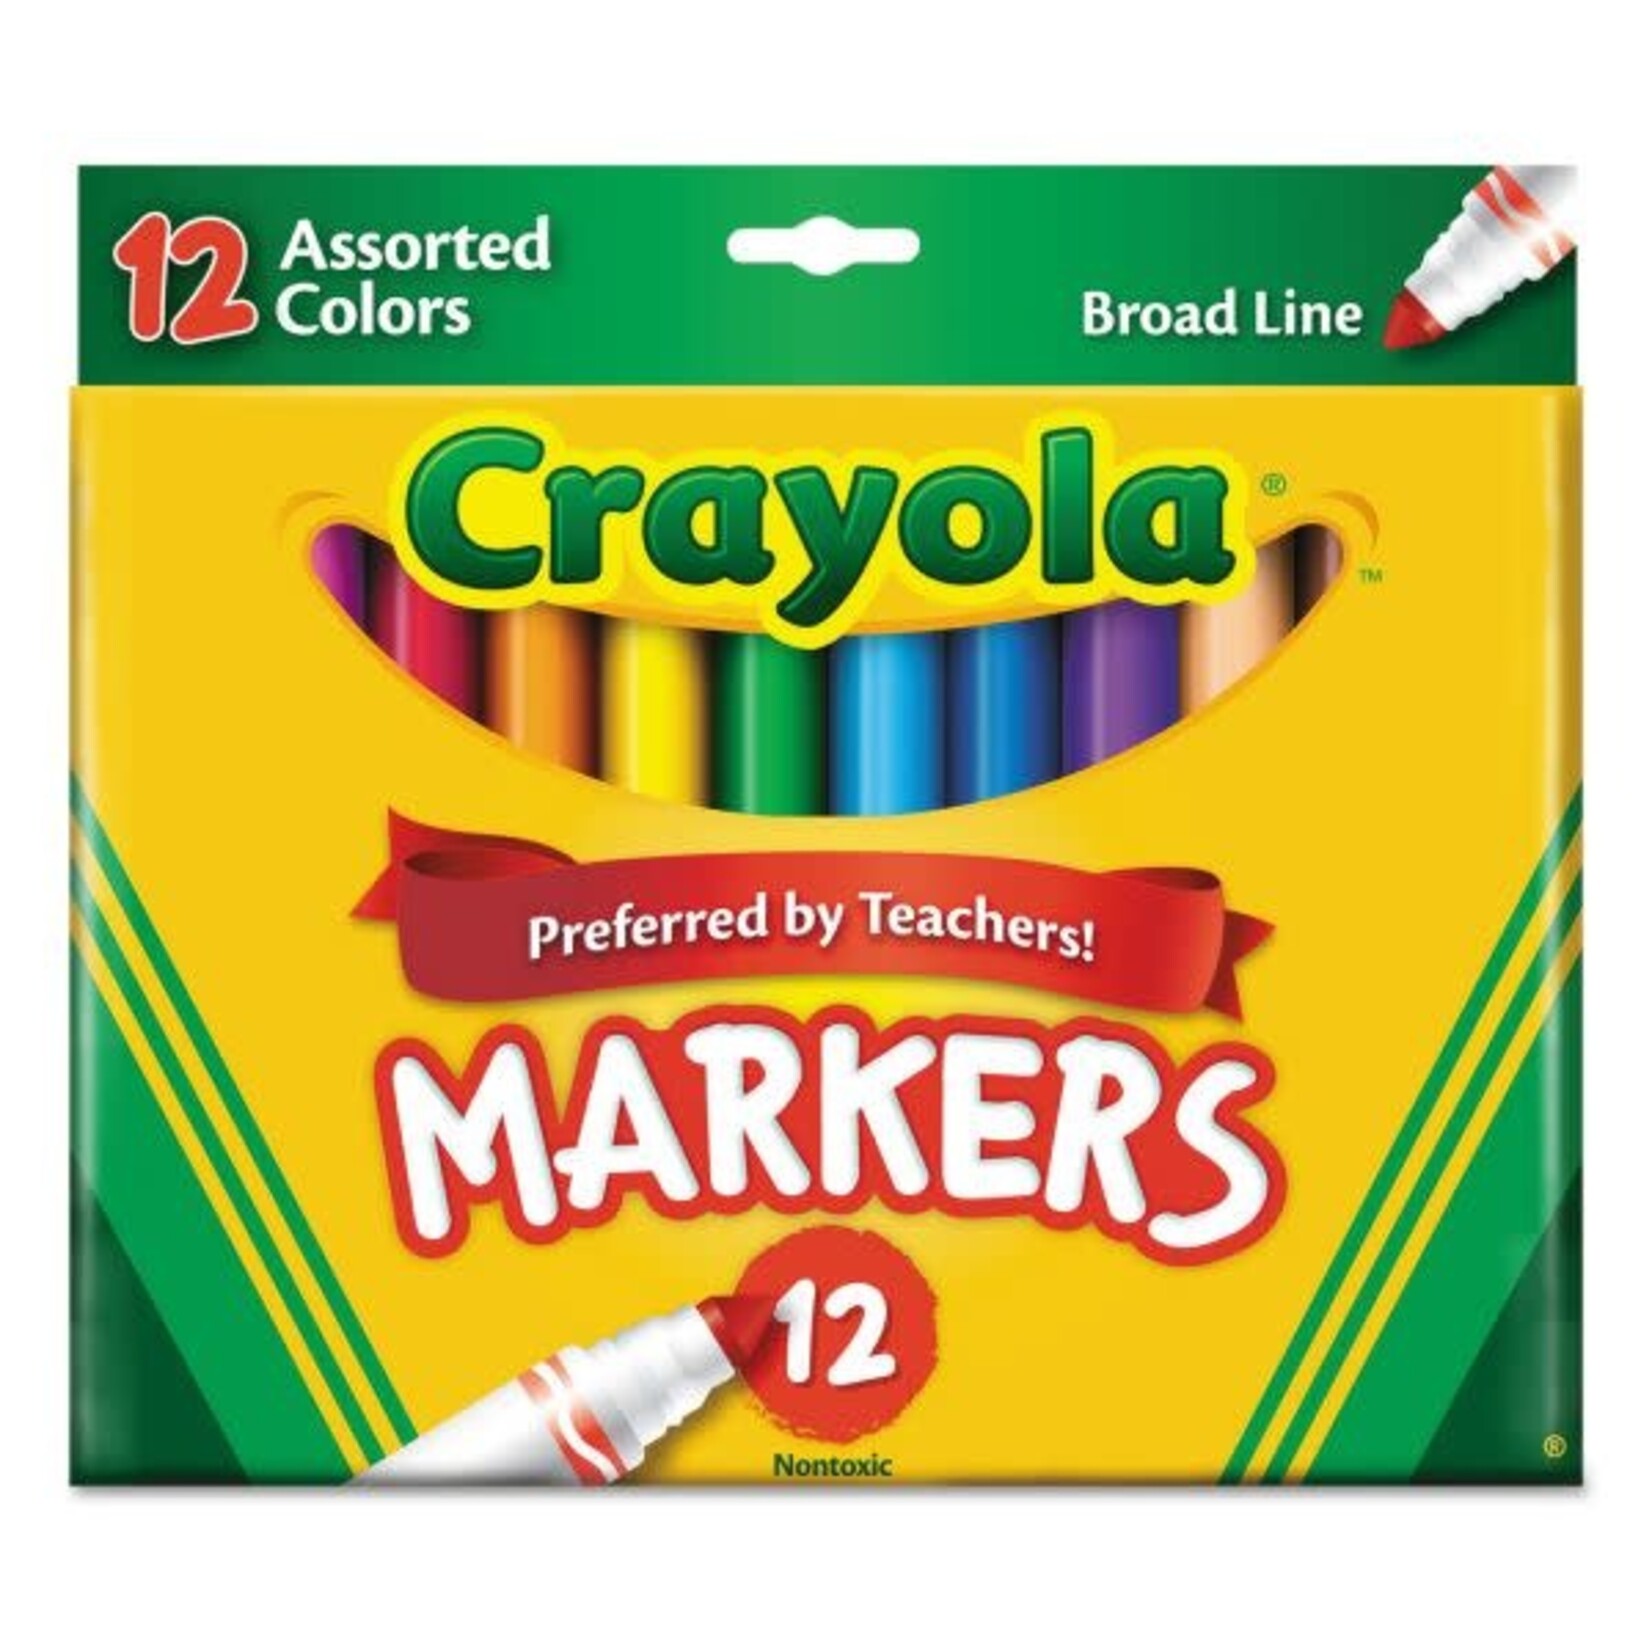 Crayola Crayola Marker Sets, 12-Color Set